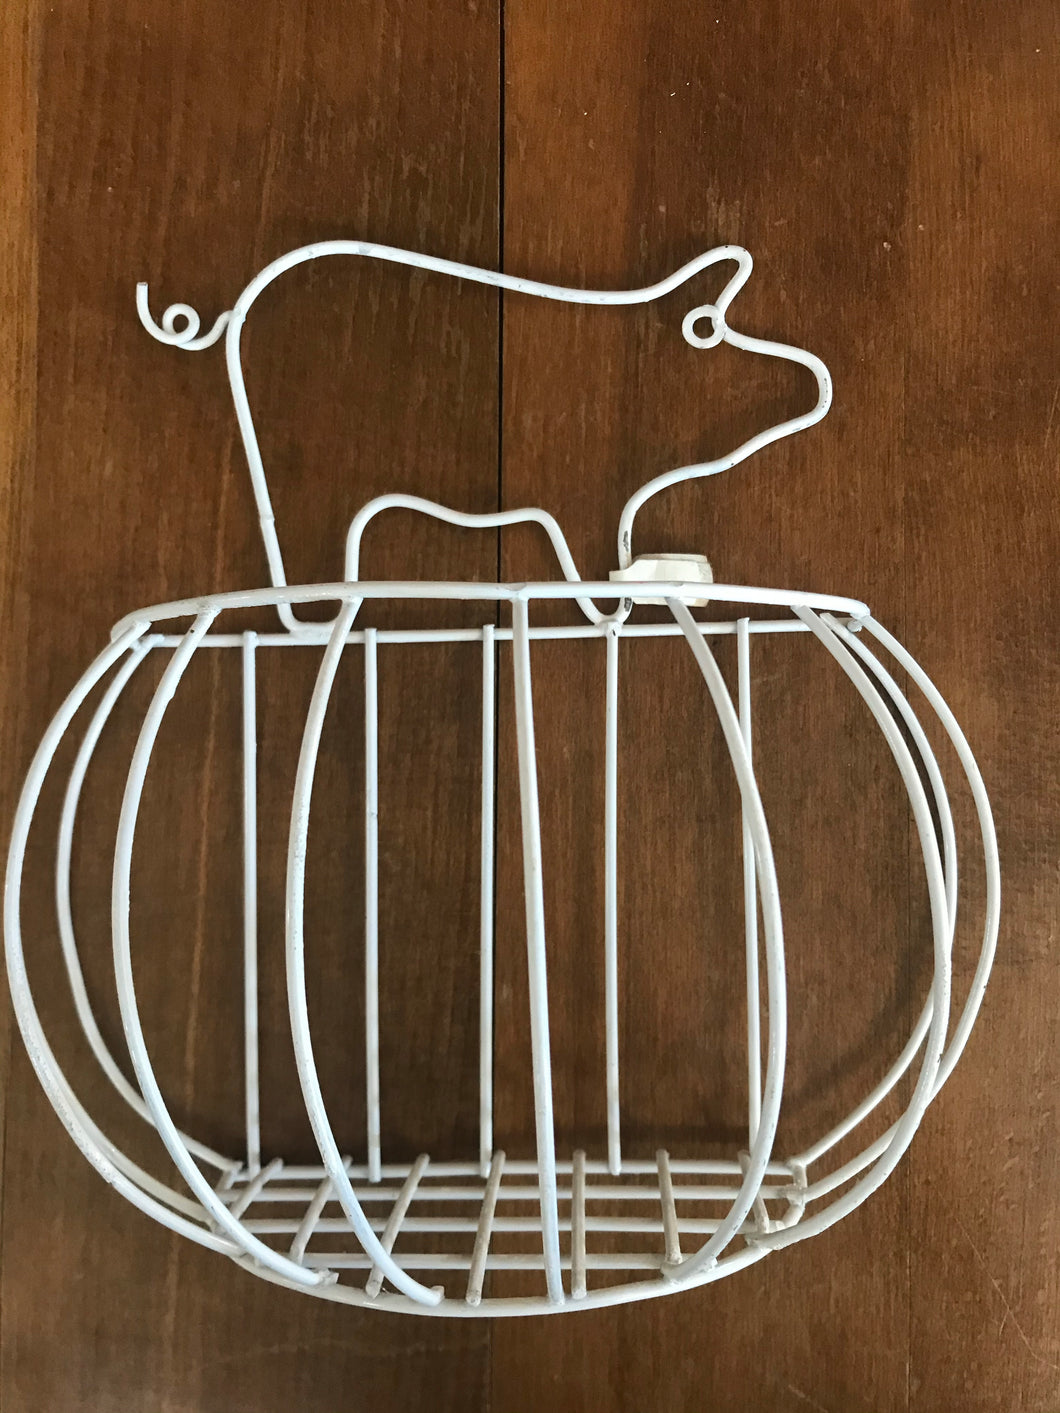 Pig Wall Hanging Basket